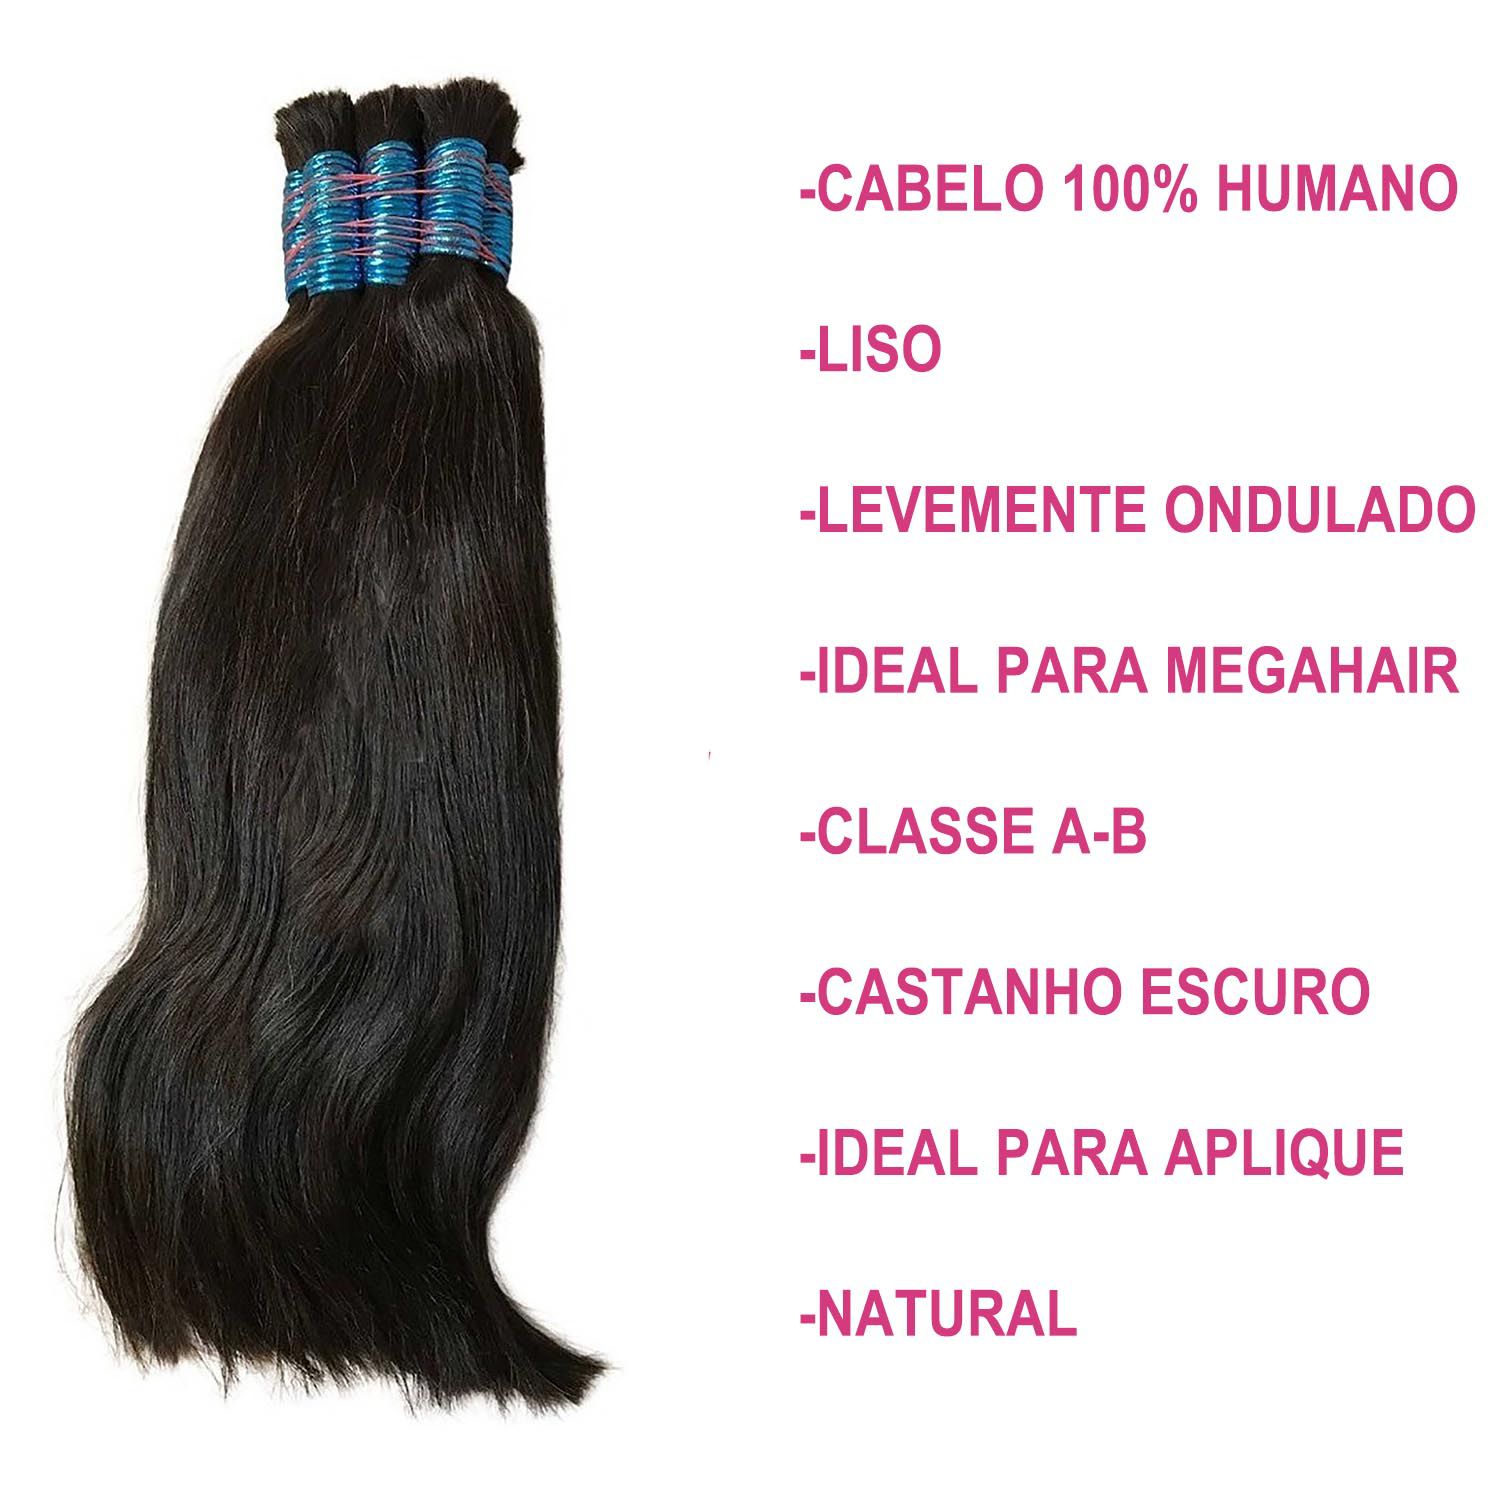 Cabelo Humano Natural 100% Humano 75cm 100g Para Mega Hair - Sassarico Shop